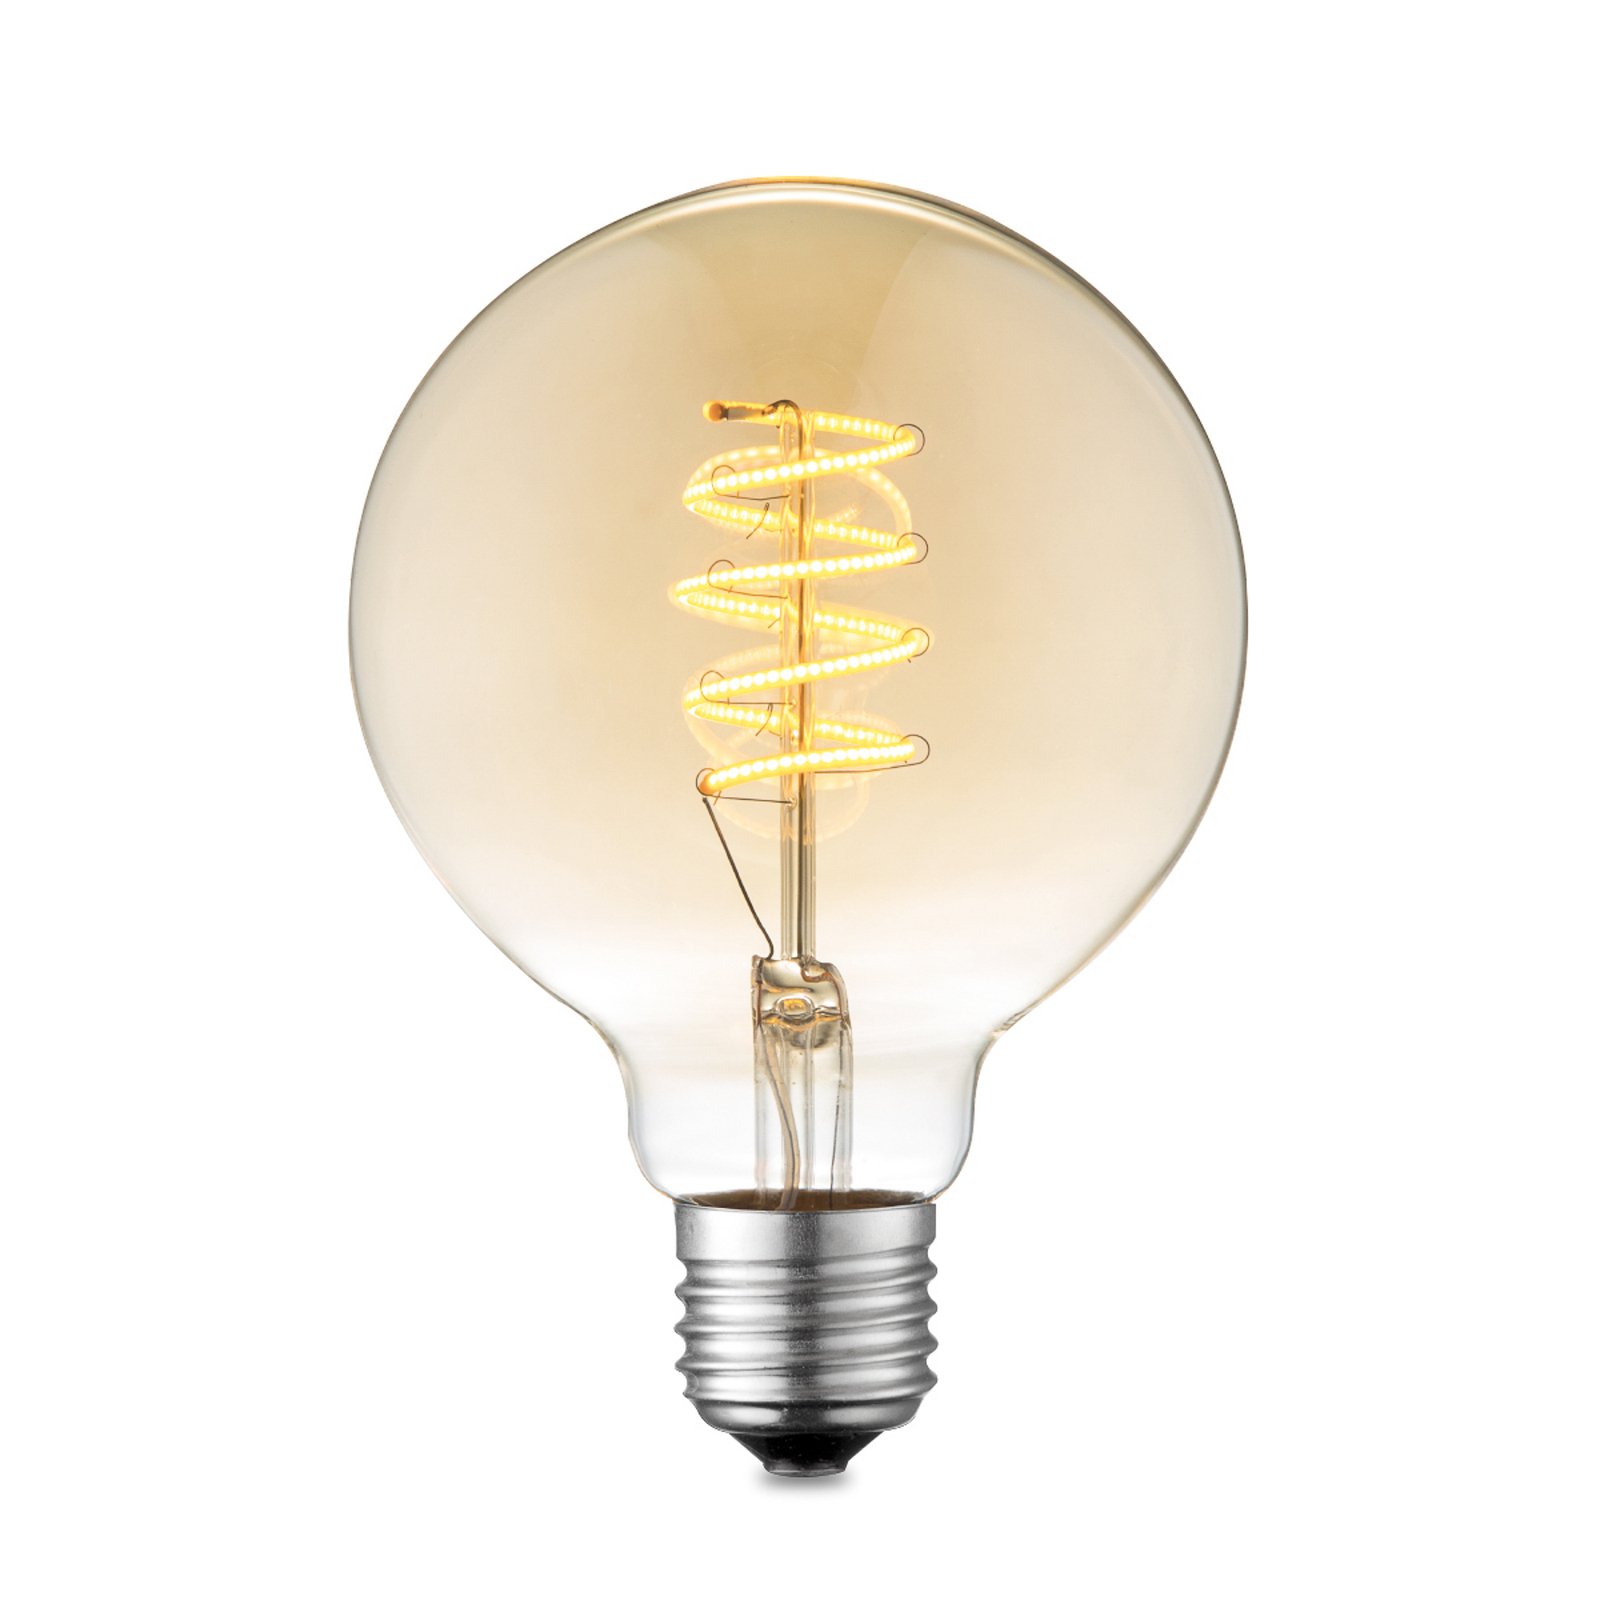 Lucande LED-lampa E27 G95 4W 2700K bärnsten